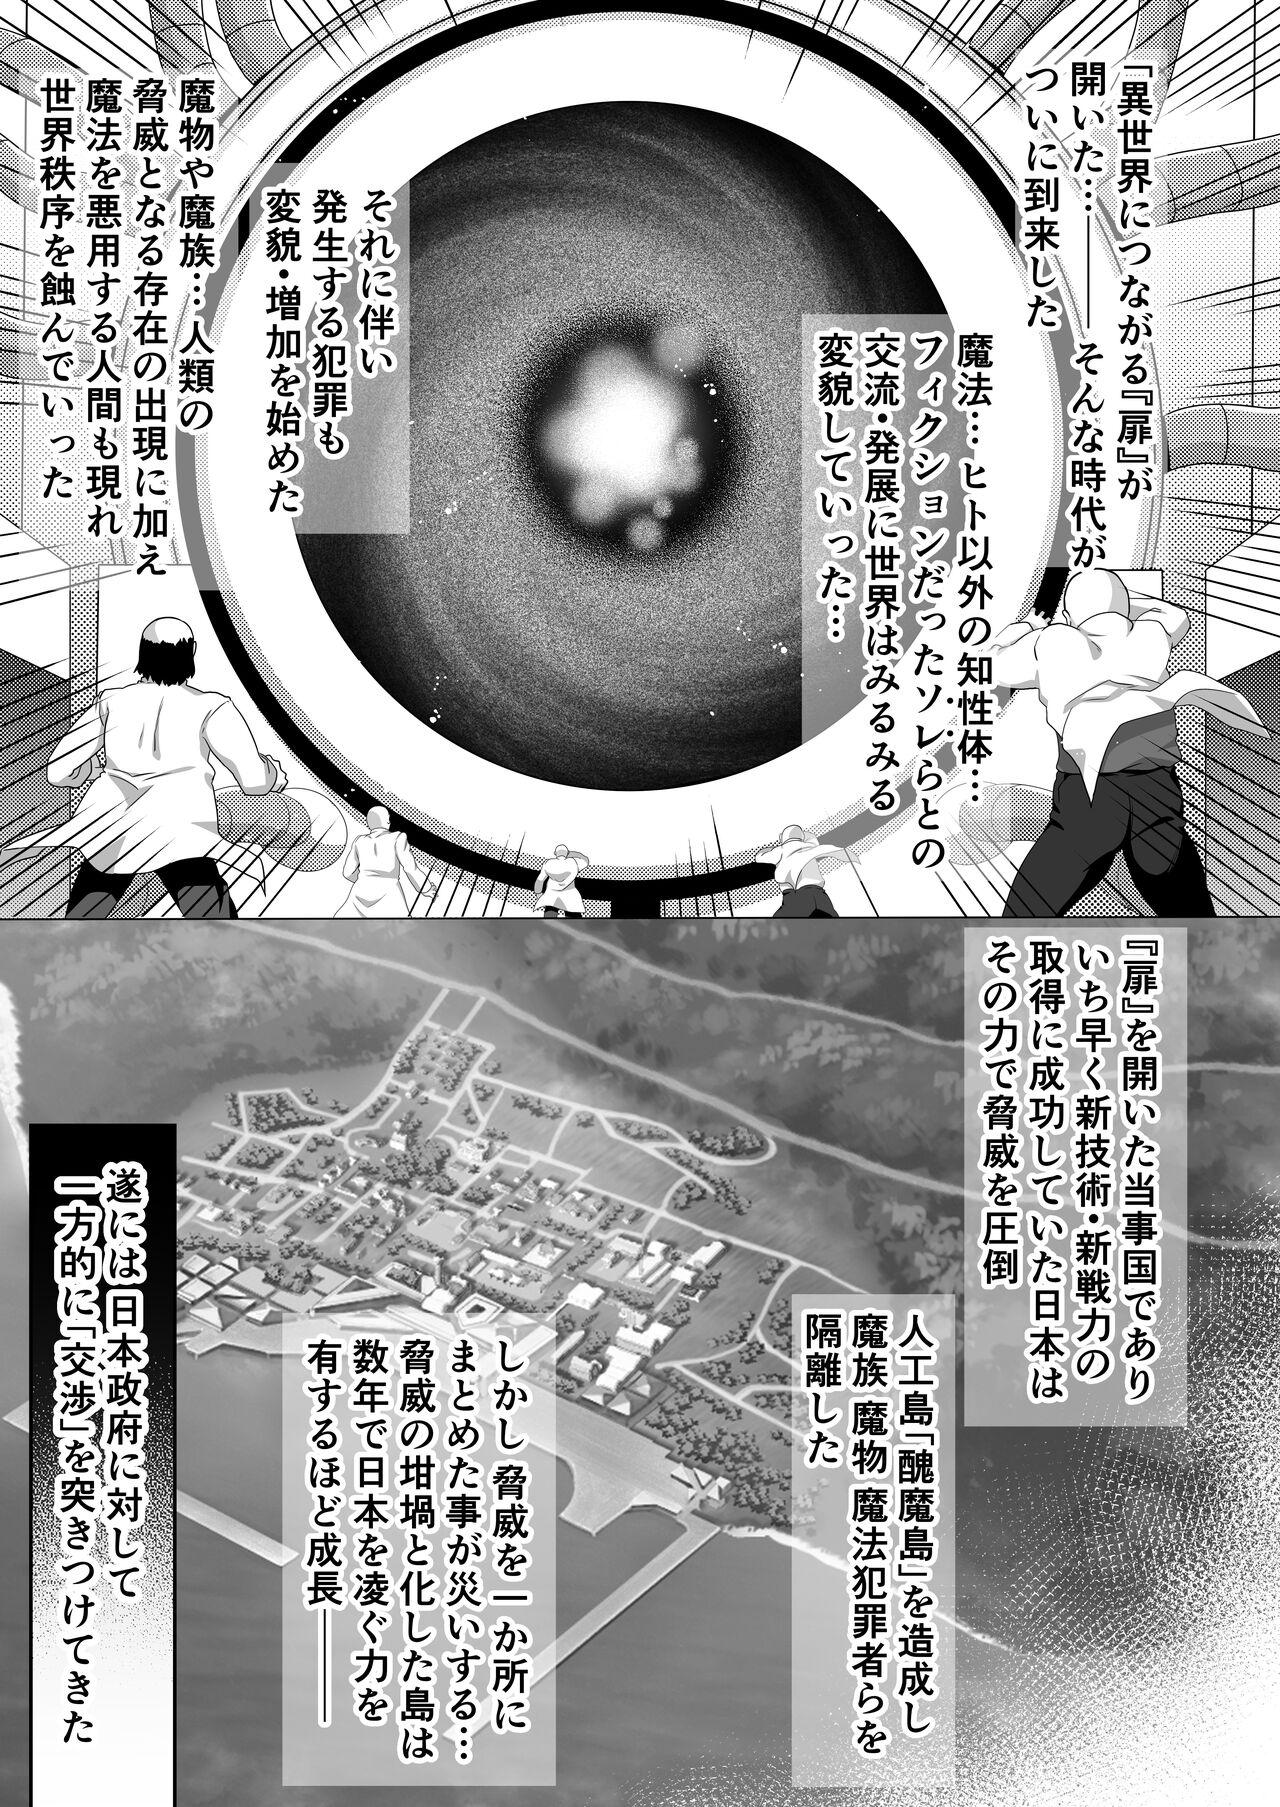 Gloryhole Watashi no Omanko ha Mina no Mono - Original 19yo - Page 6